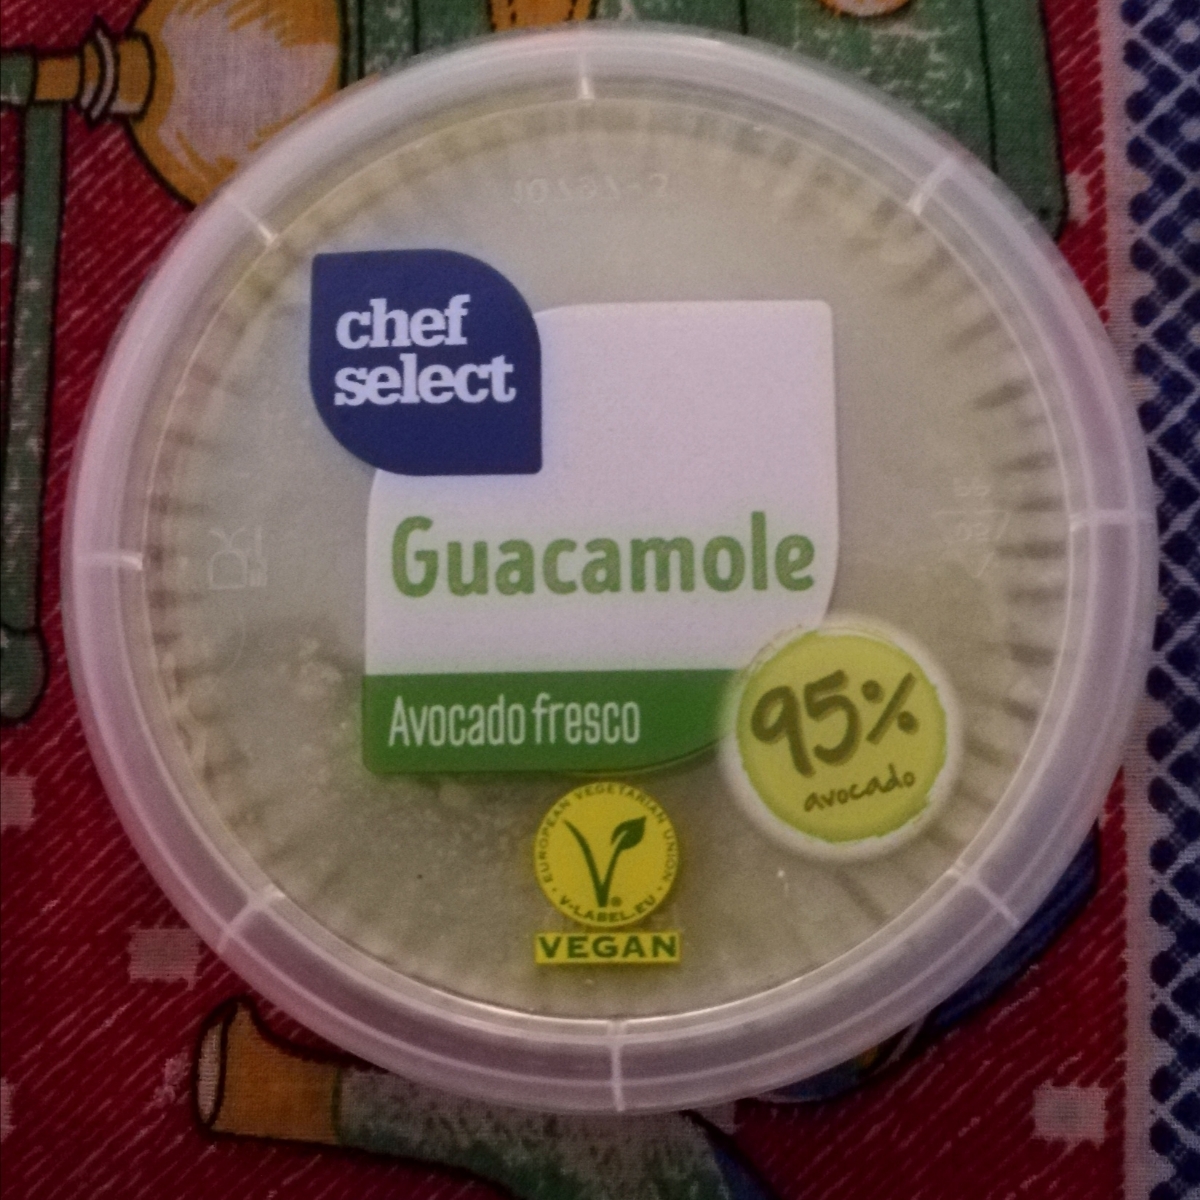 Chef Select Guacamole (